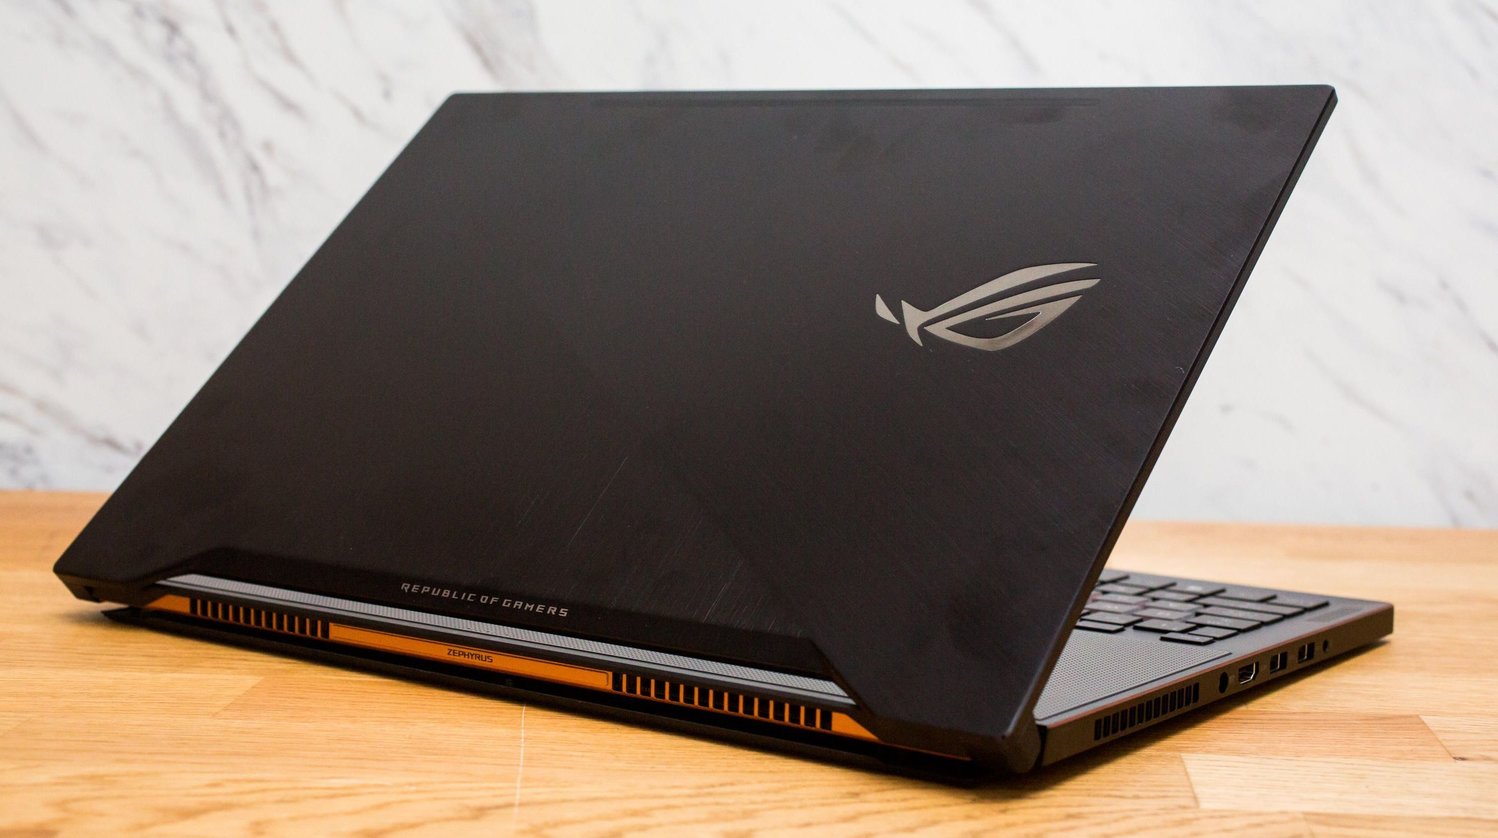 Íme az Asus legújabb Gamer laptopja, ami persze olcsóbb és már majdnem olyan vékony, mint az új Macbook Pro 